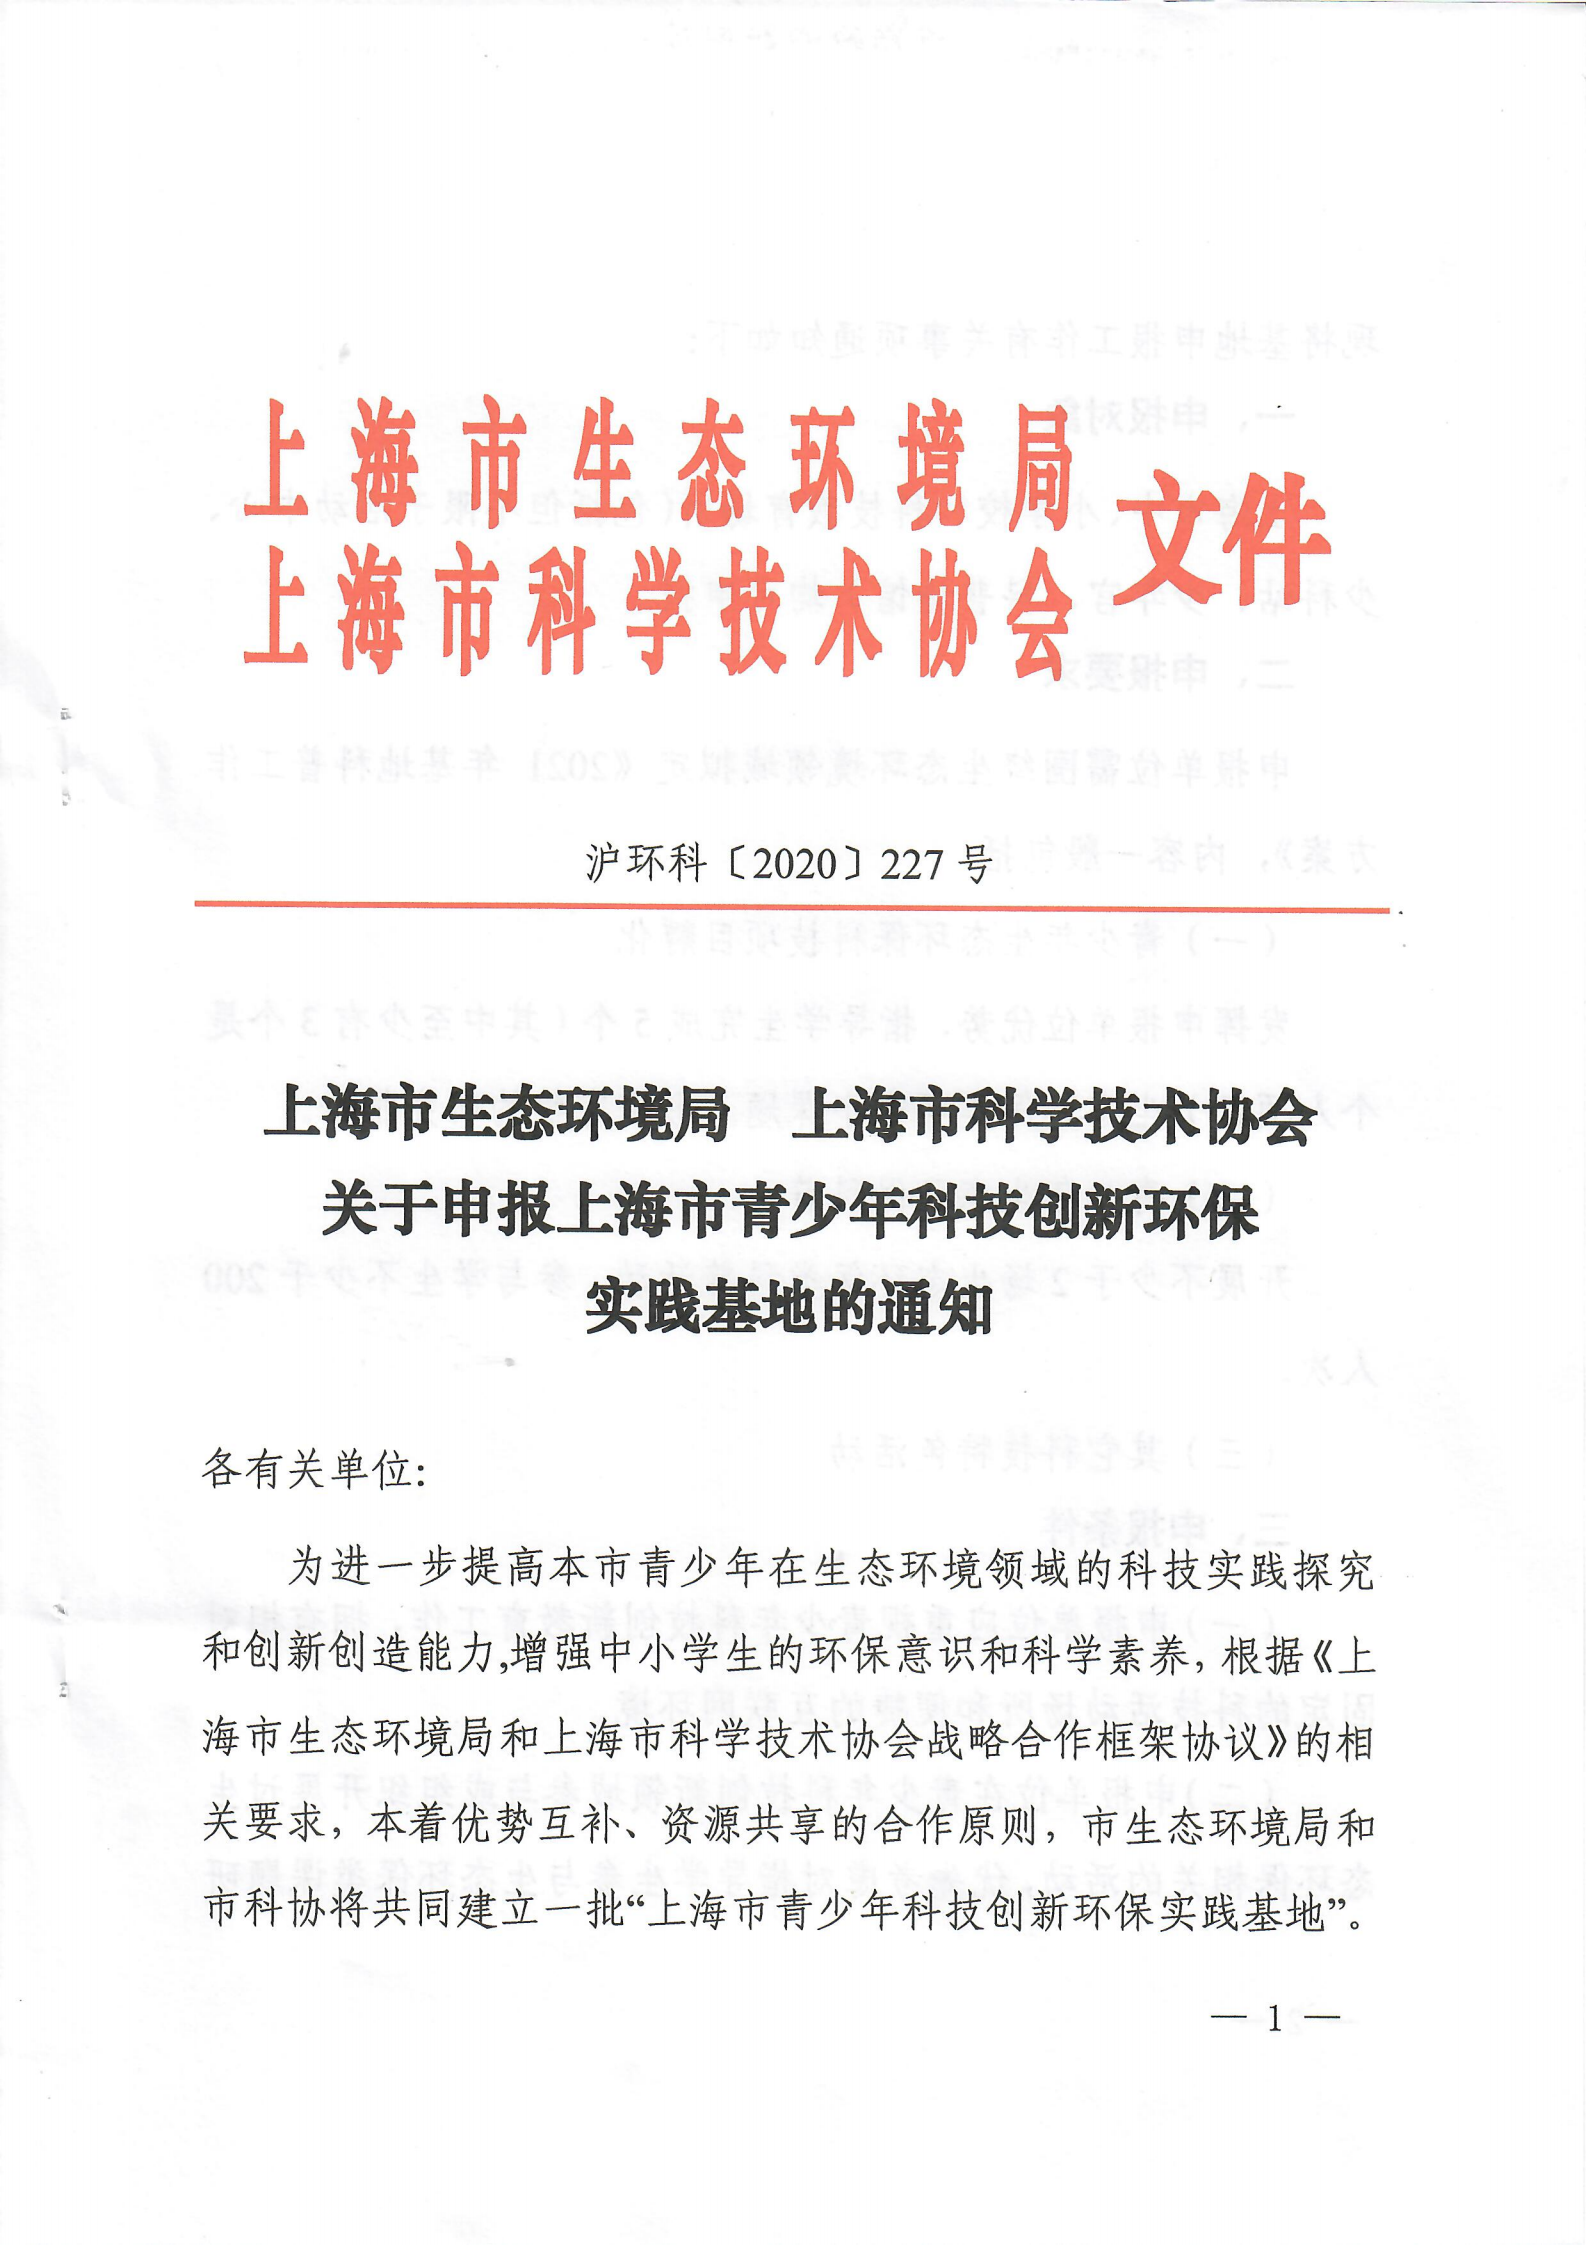 关于申报上海市青少年科技创新环保实践基地的通知扫描版_00.png